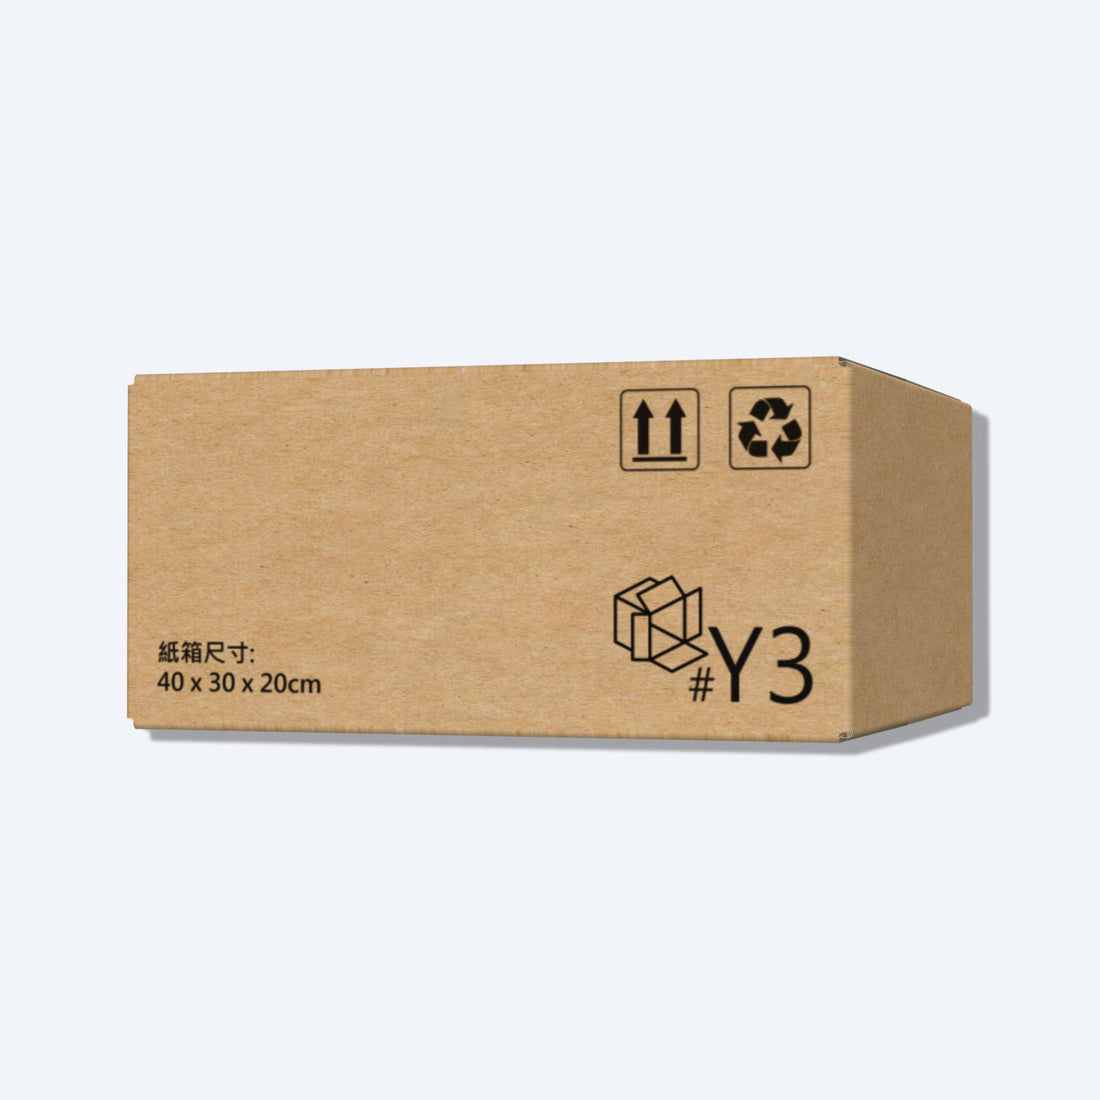 順豐速運Y3尺寸紙箱側視圖，展示尺寸和質感，是適合中型物品運輸的理想選擇。